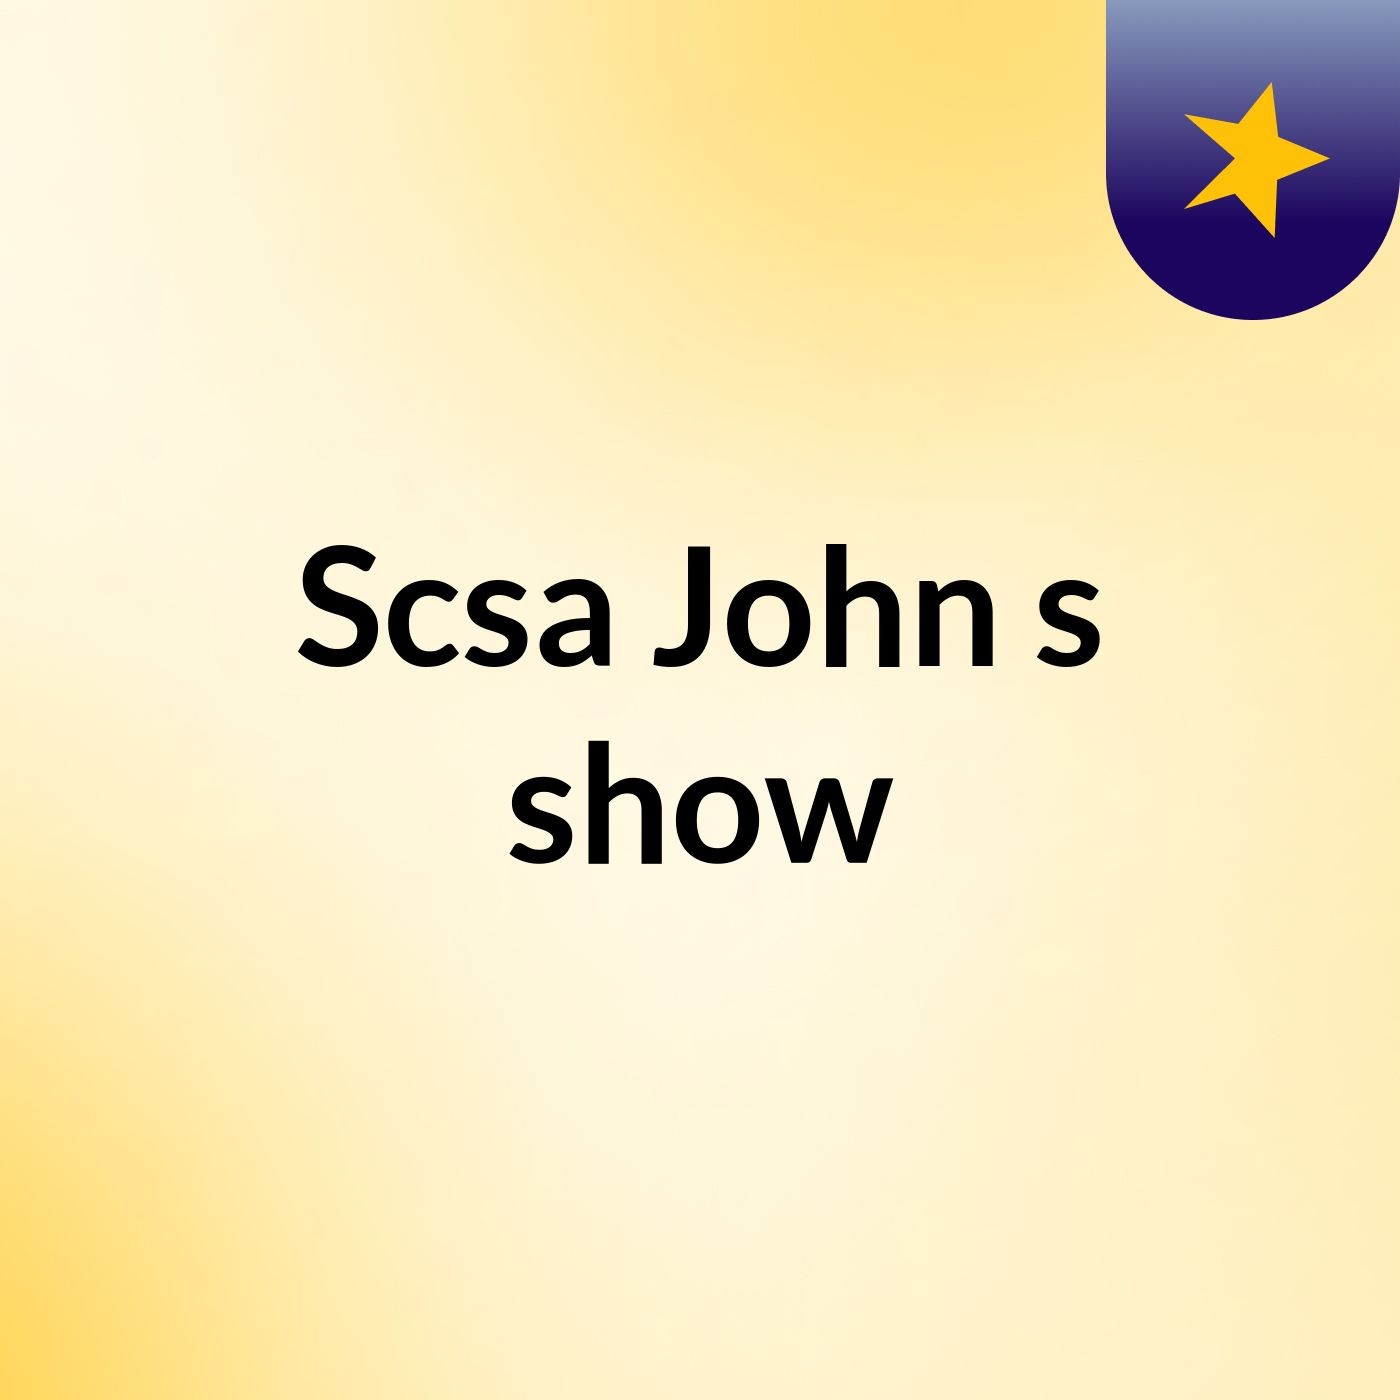 Scsa John's show